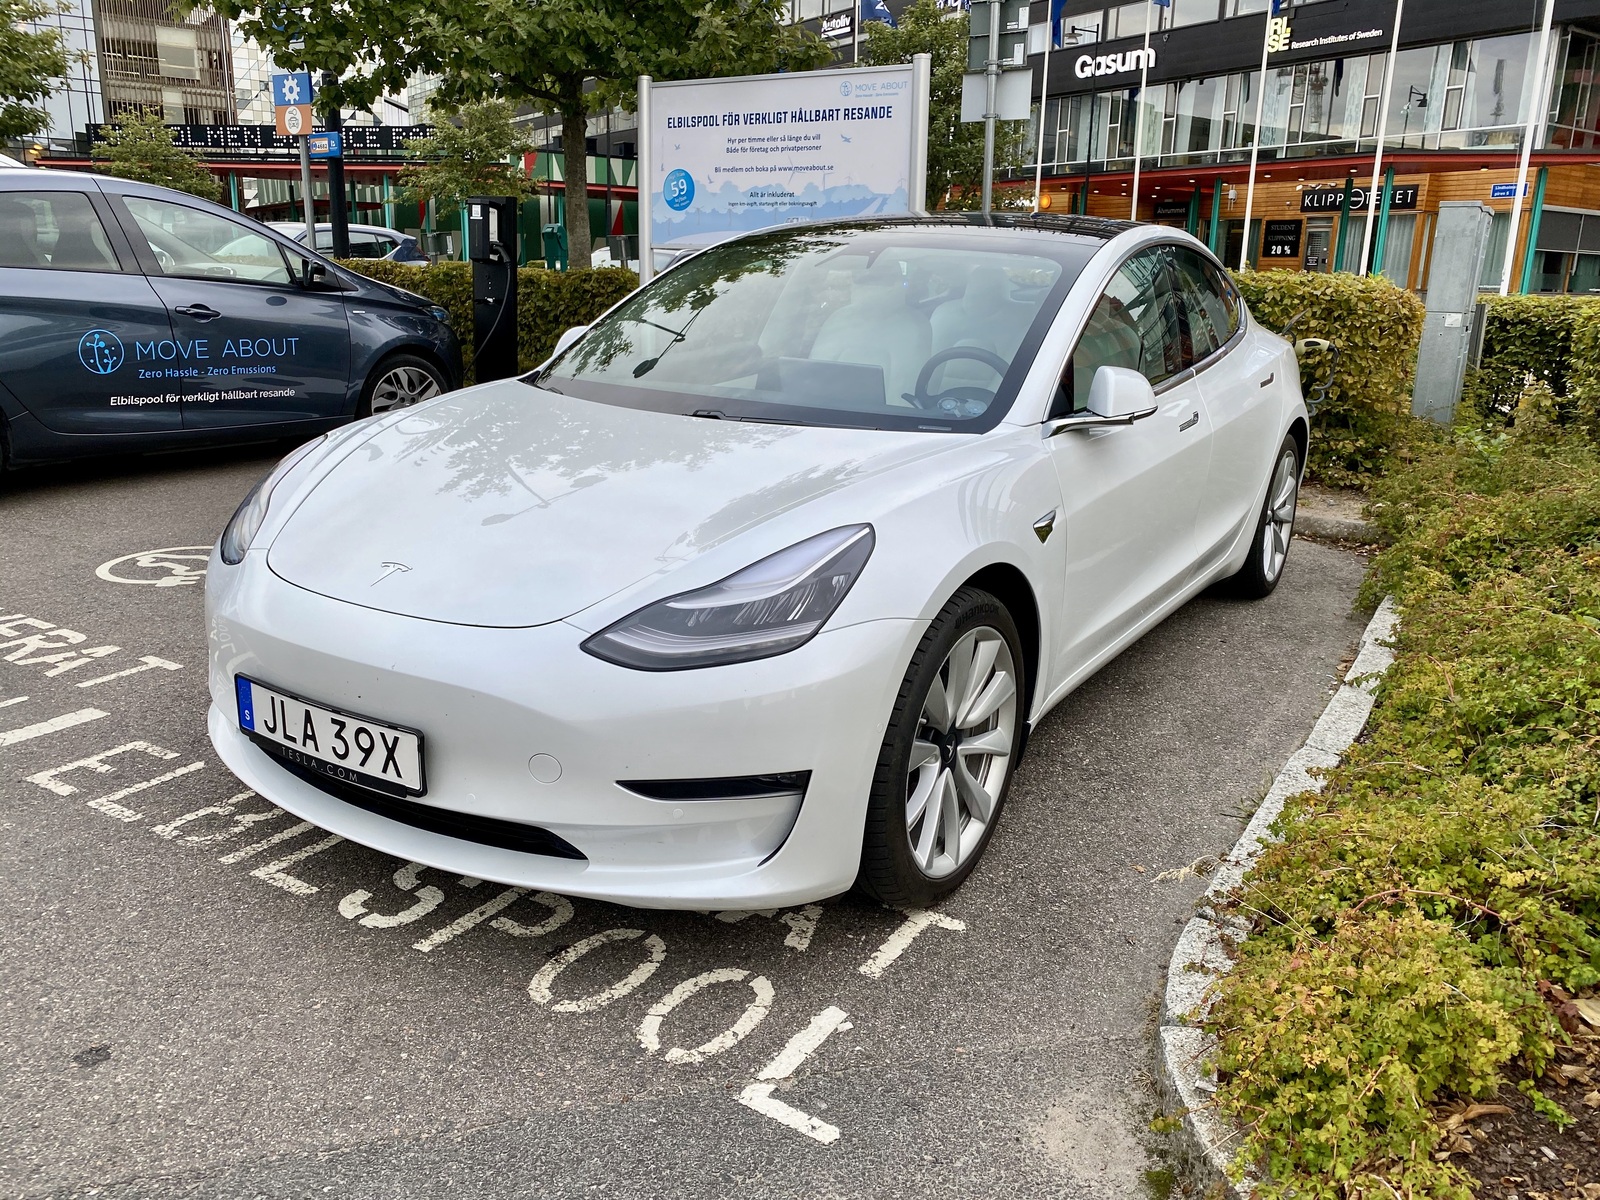 Hyr en Tesla med Move About i Göteborg